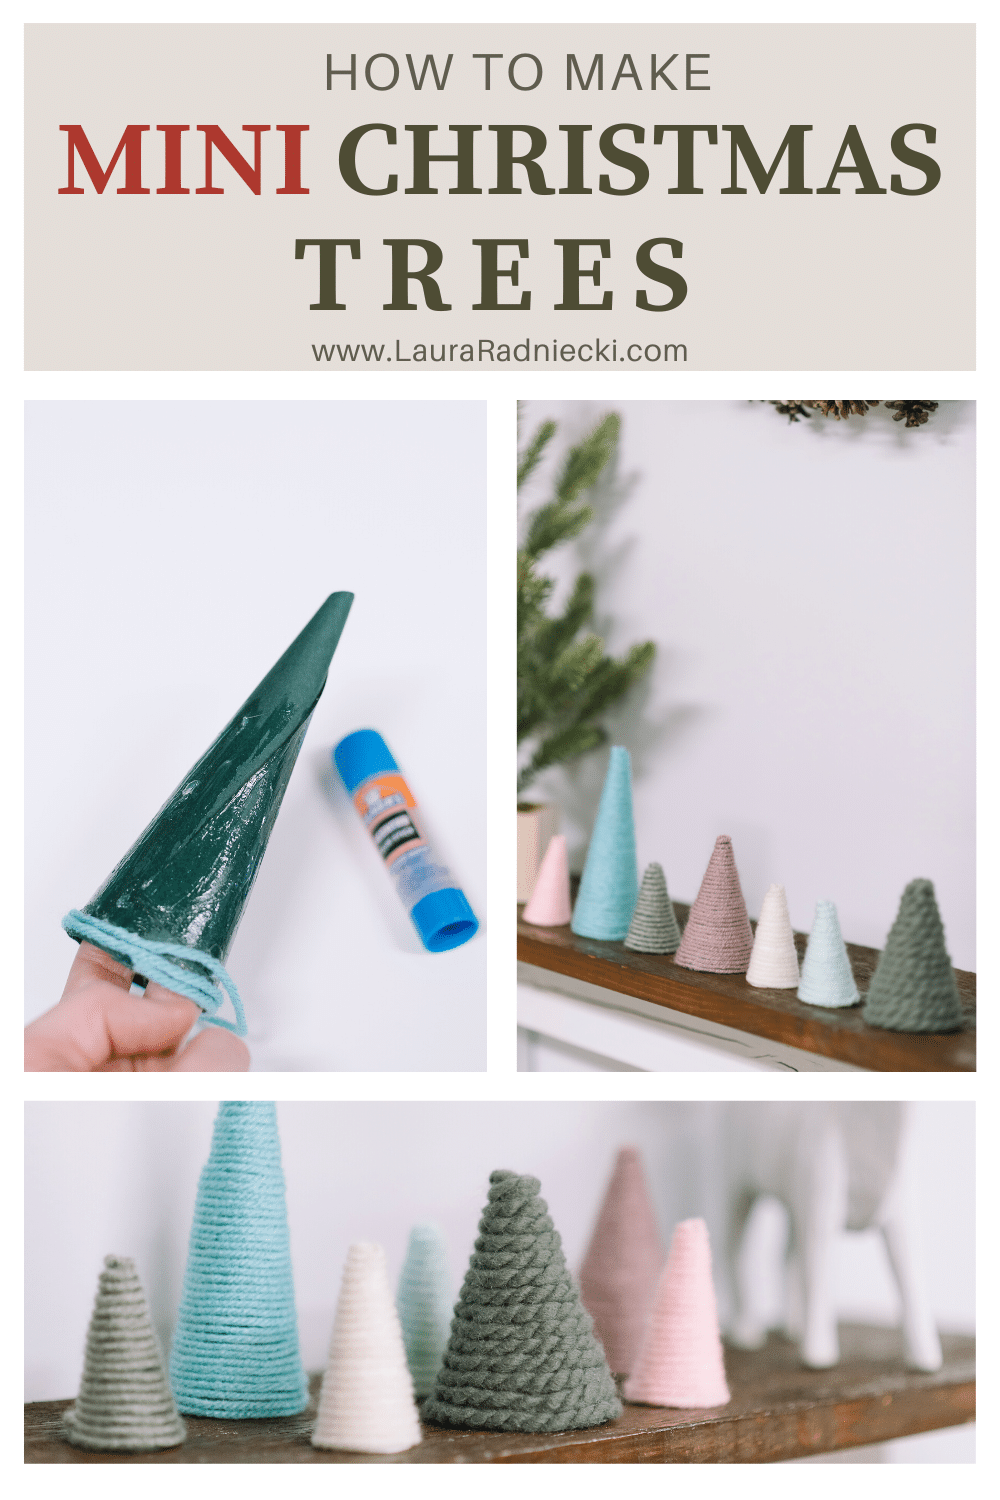 How to Make Mini Christmas Trees